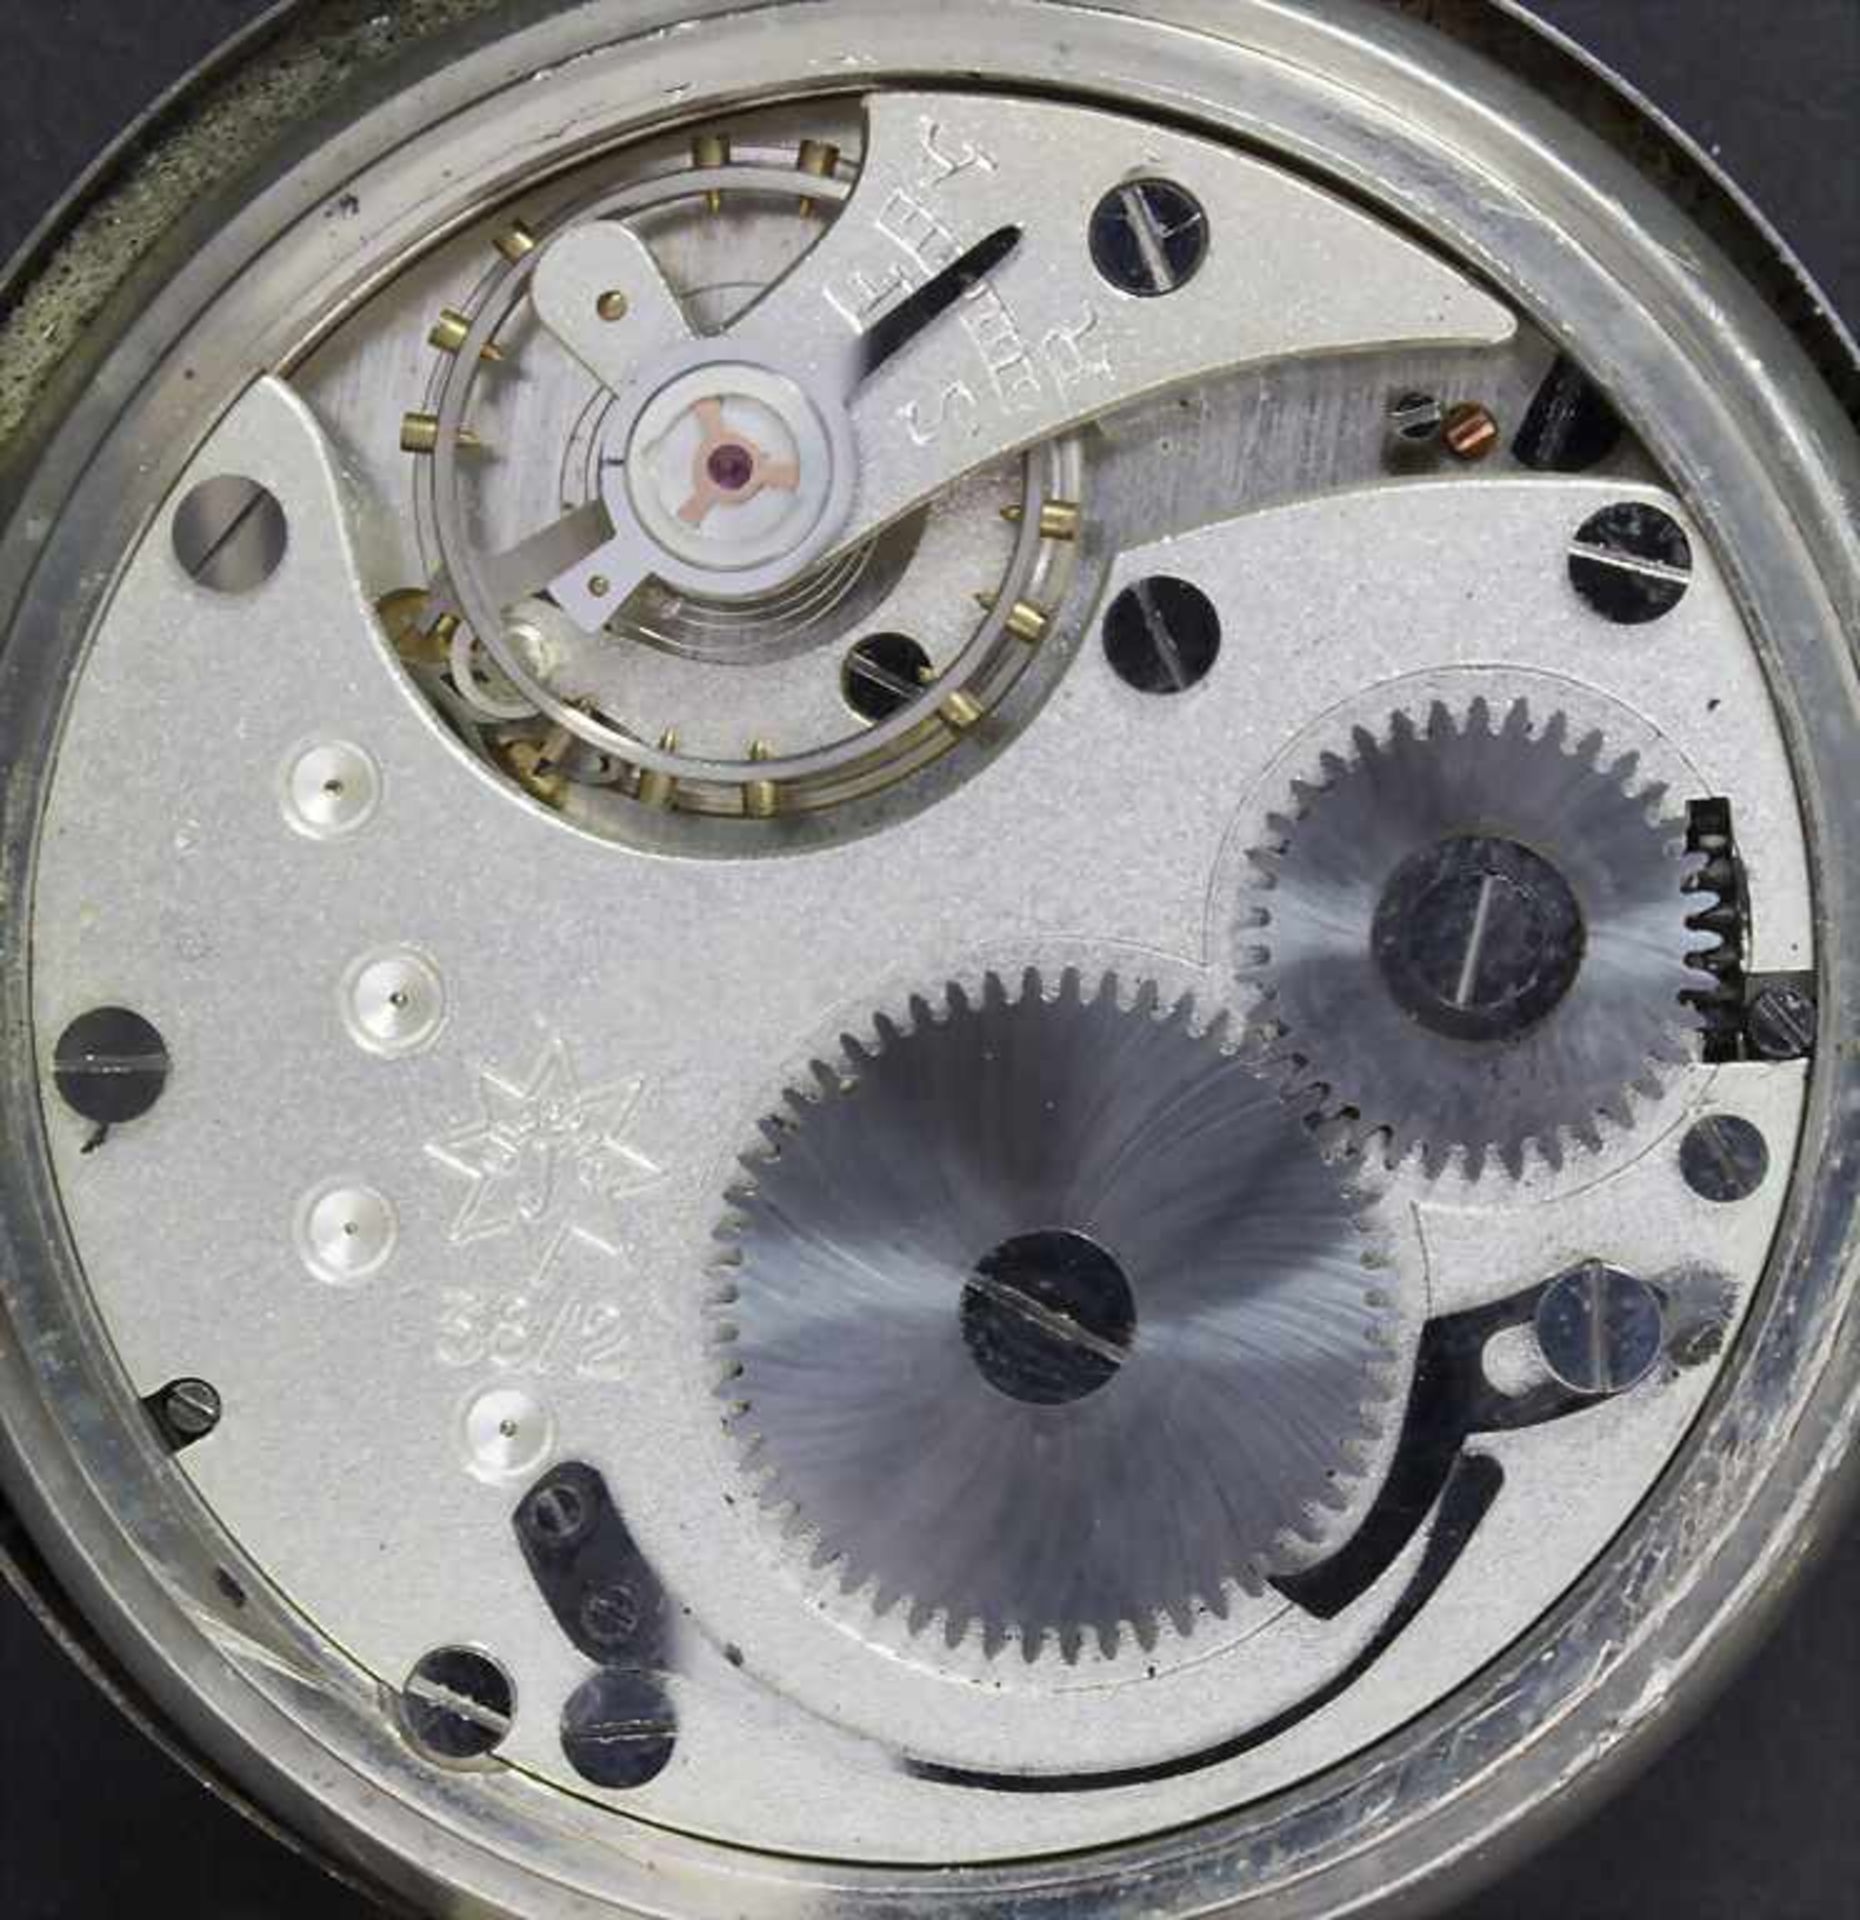 2 Taschenuhren / 2 pocket watches - Image 2 of 2